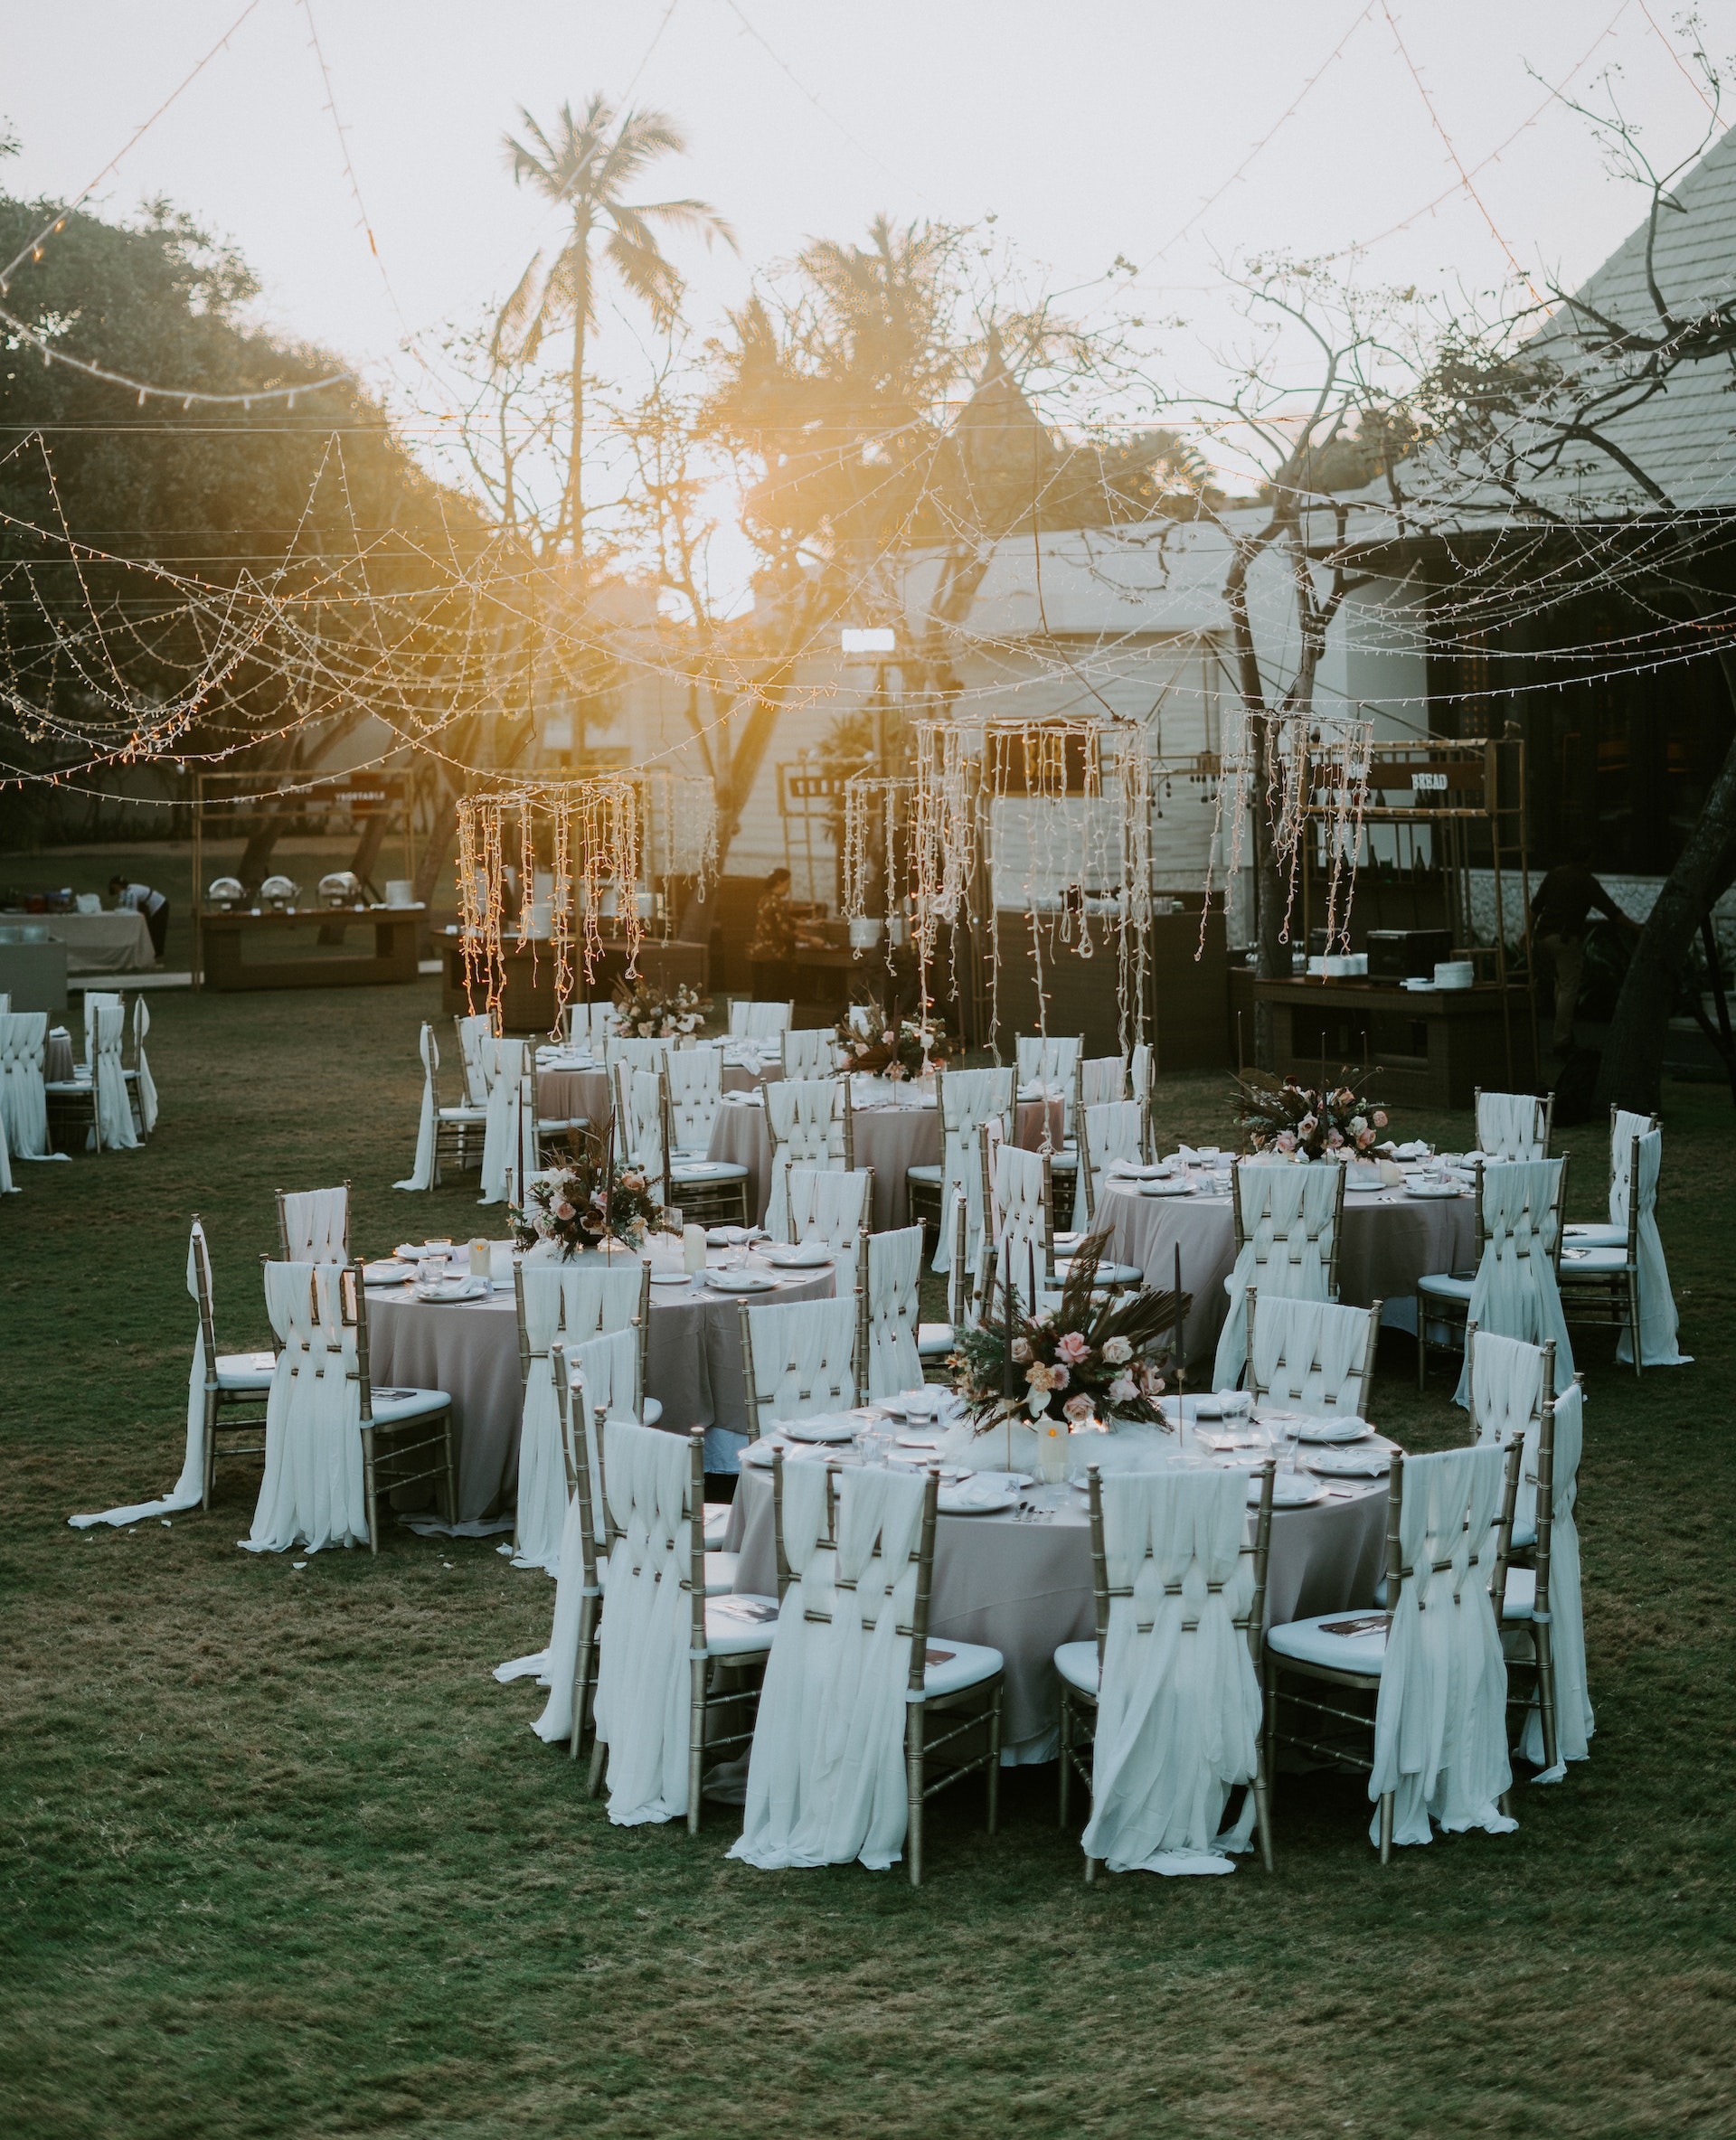 Arreglos para una boda al aire libre | Fuente: Pexels